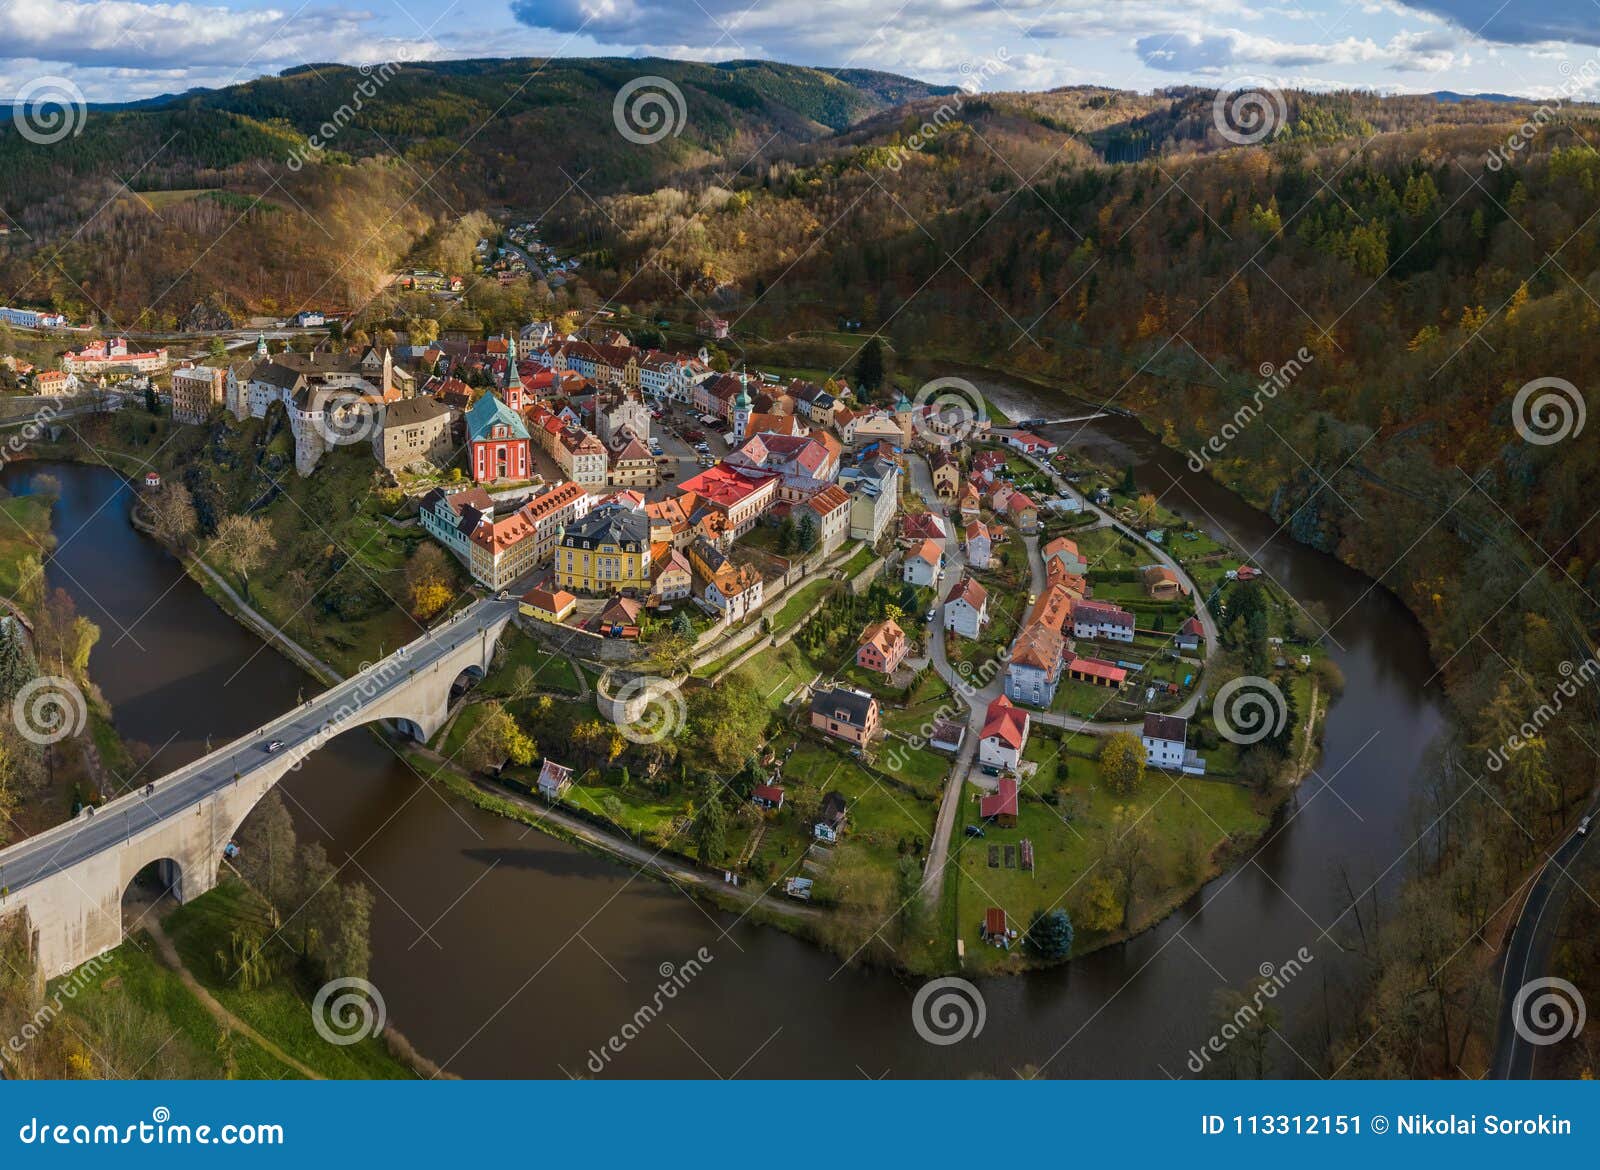 castle loket in czech republic